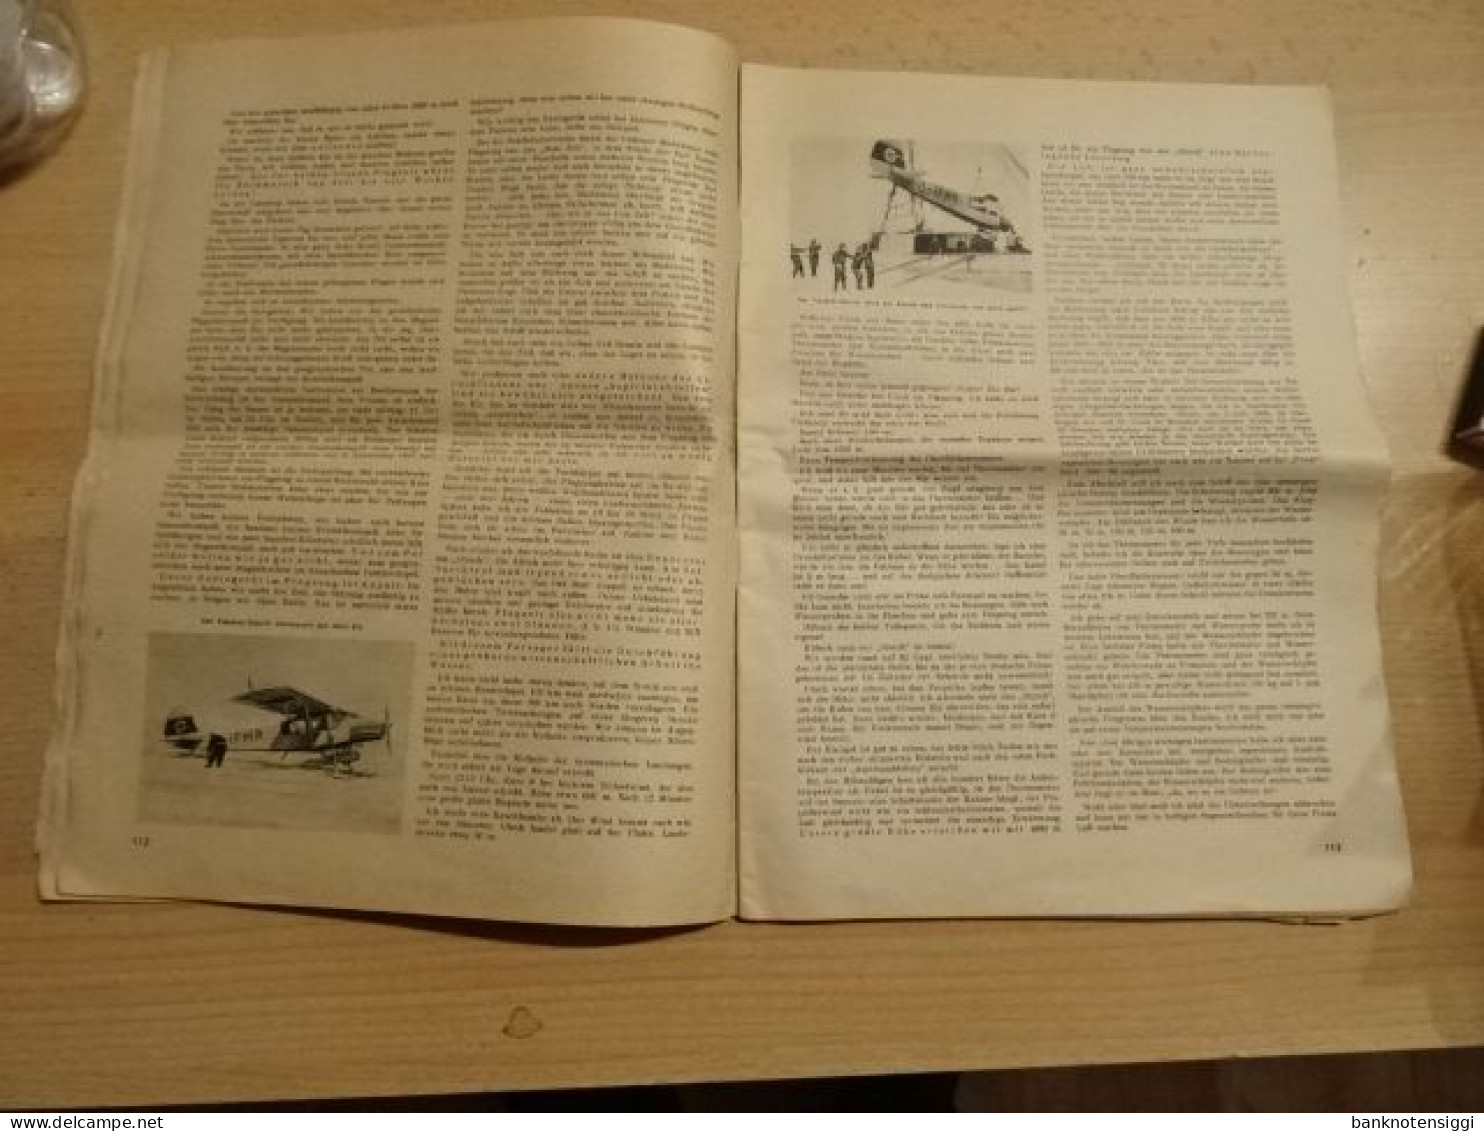 Der Deutsche Sportfieger. Heft Nr.4. April 1944 - Tedesco